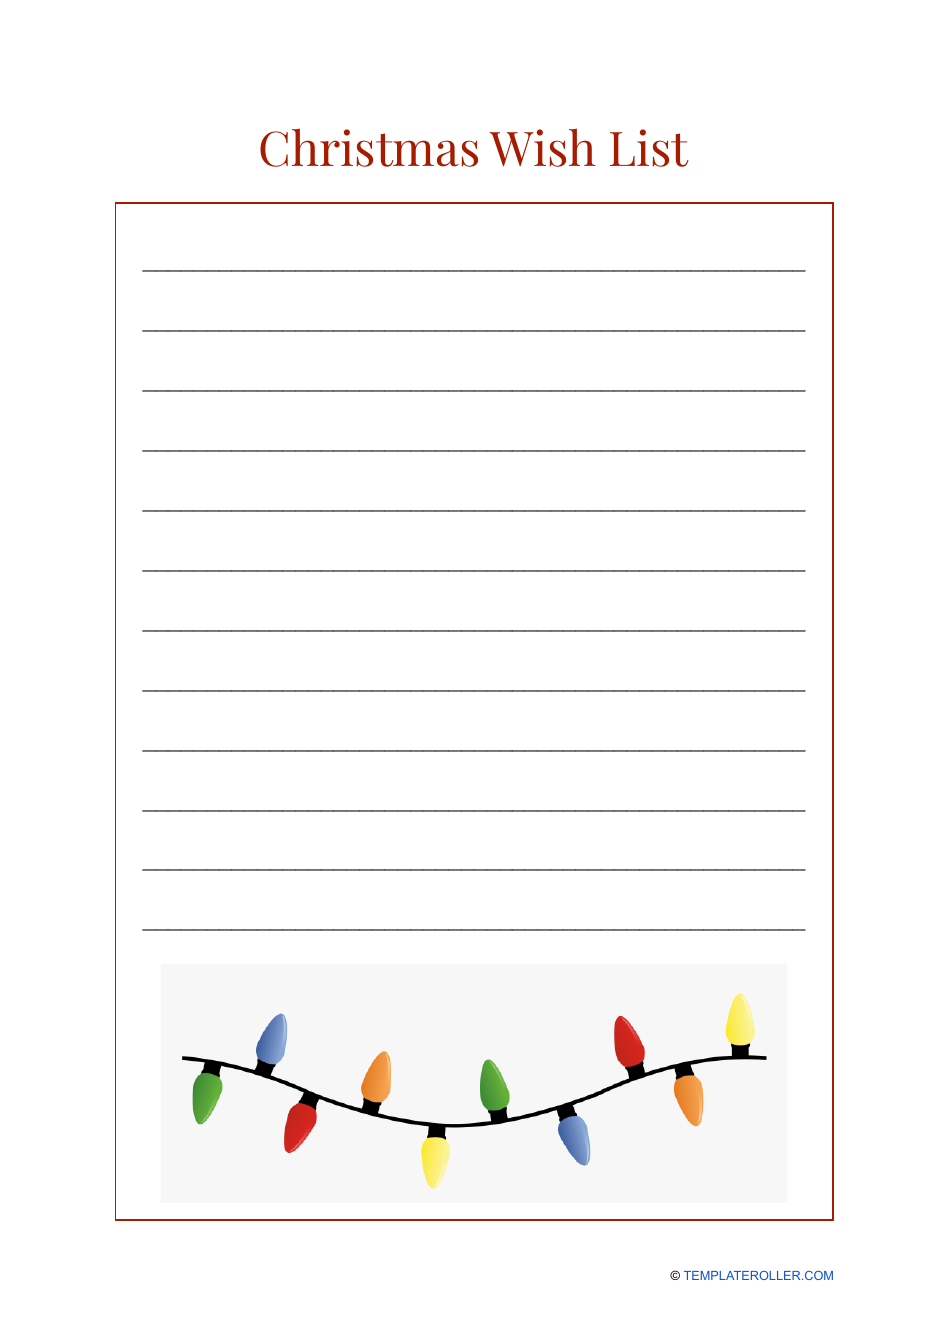 Christmas Wish List Template - Lights